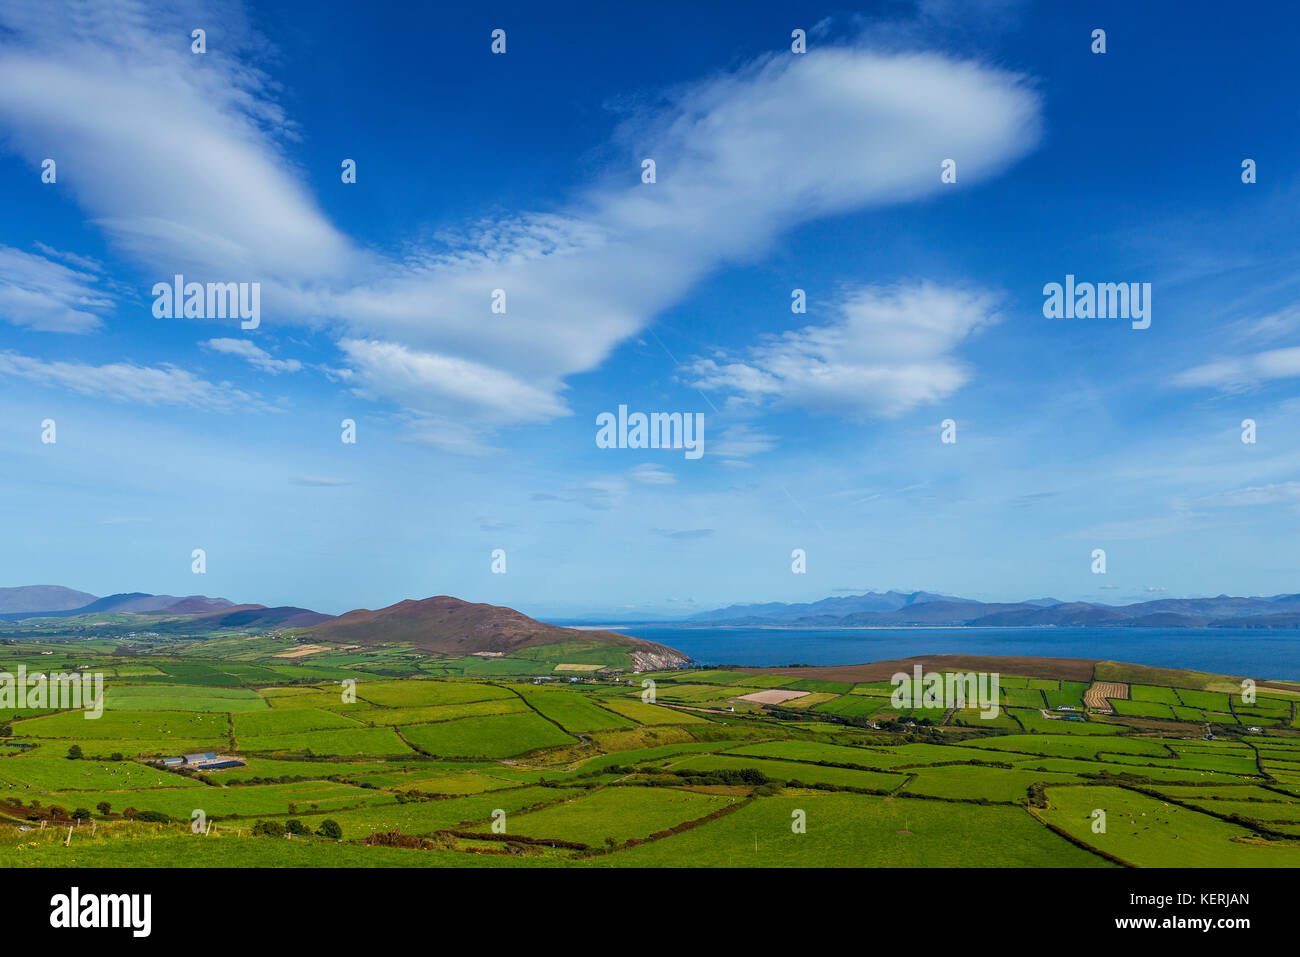 Los pequeños campos verdes en un paisaje rural de Irlanda, cerca de la cabeza de toro, la península Dingle, Condado de Kerry, Irlanda Foto de stock